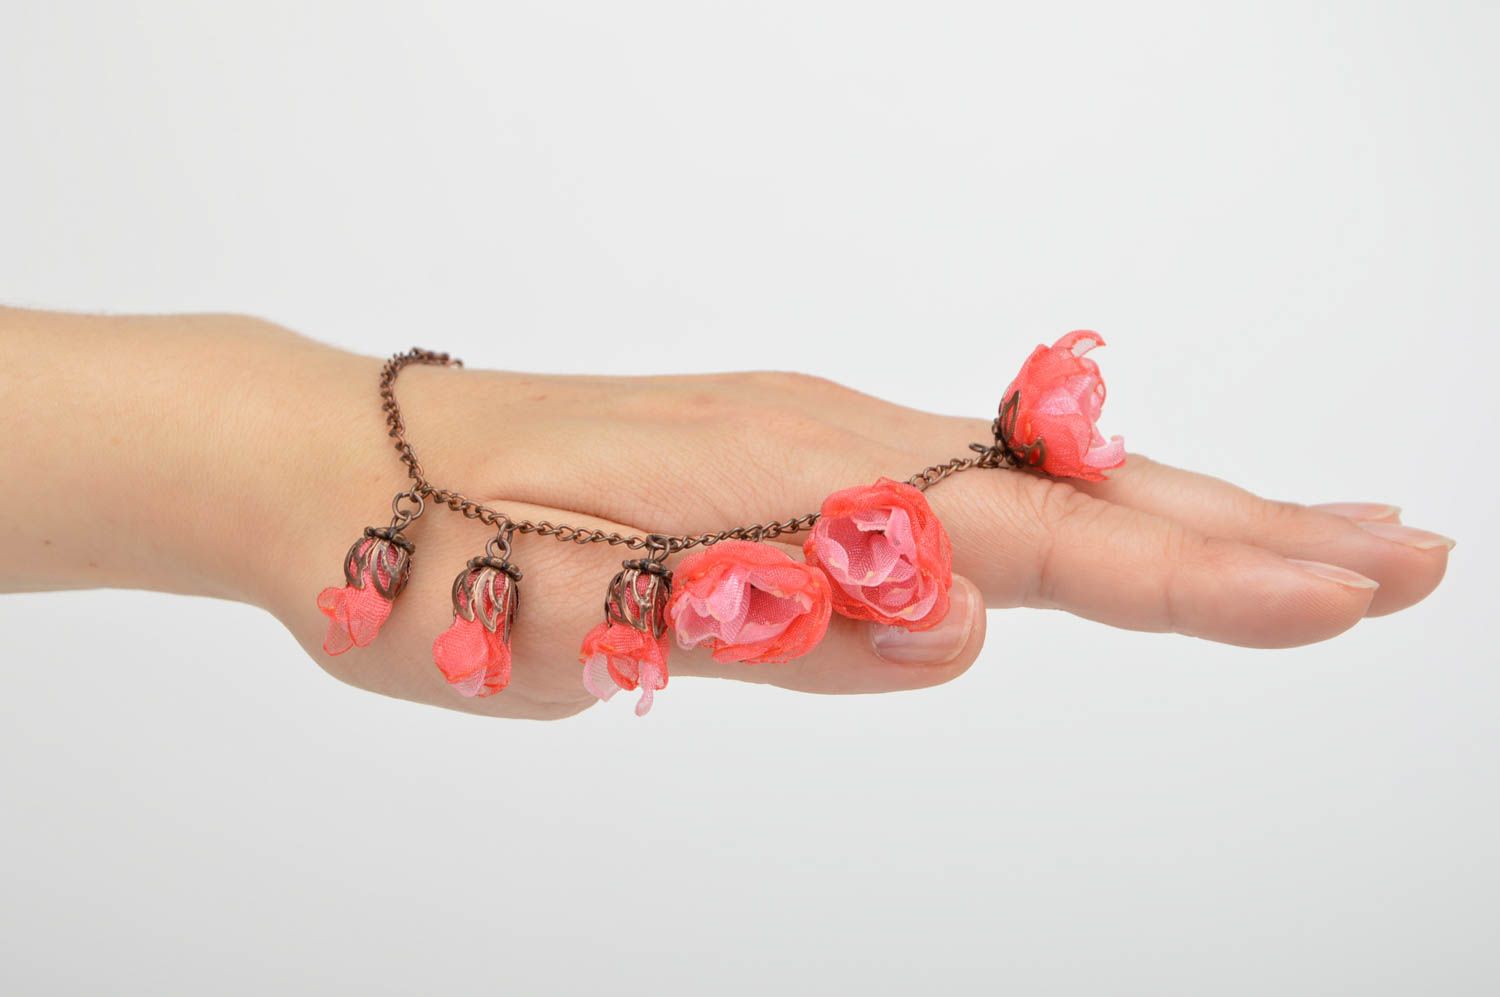 Нарядный браслет с цветами из шифона и металлической цепочки аксессуар хенд мейд фото 2